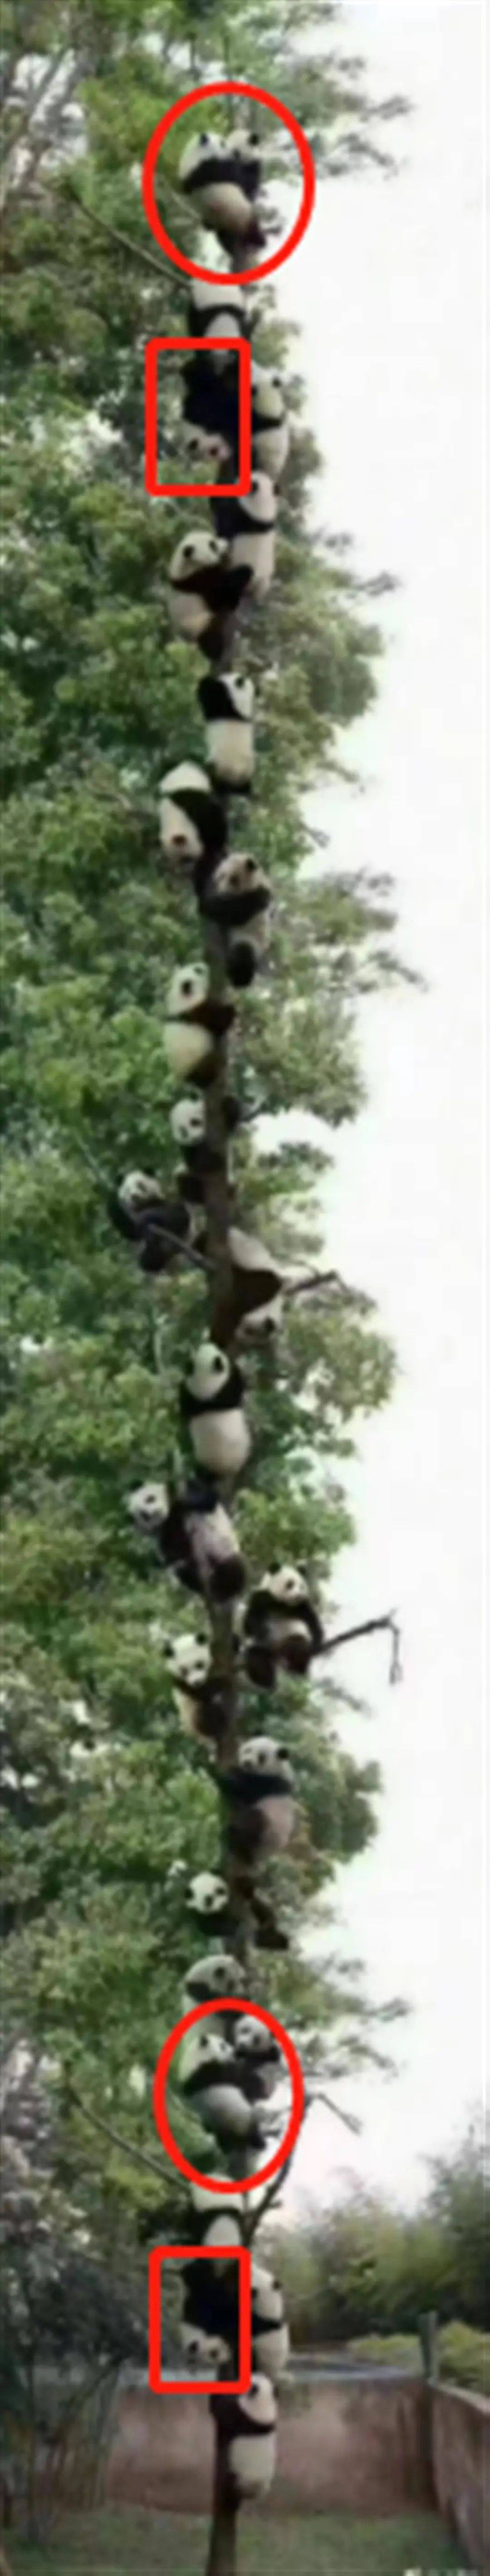 27只大熊猫爬同一棵树躲避地震？专业人士：P图痕迹明显！